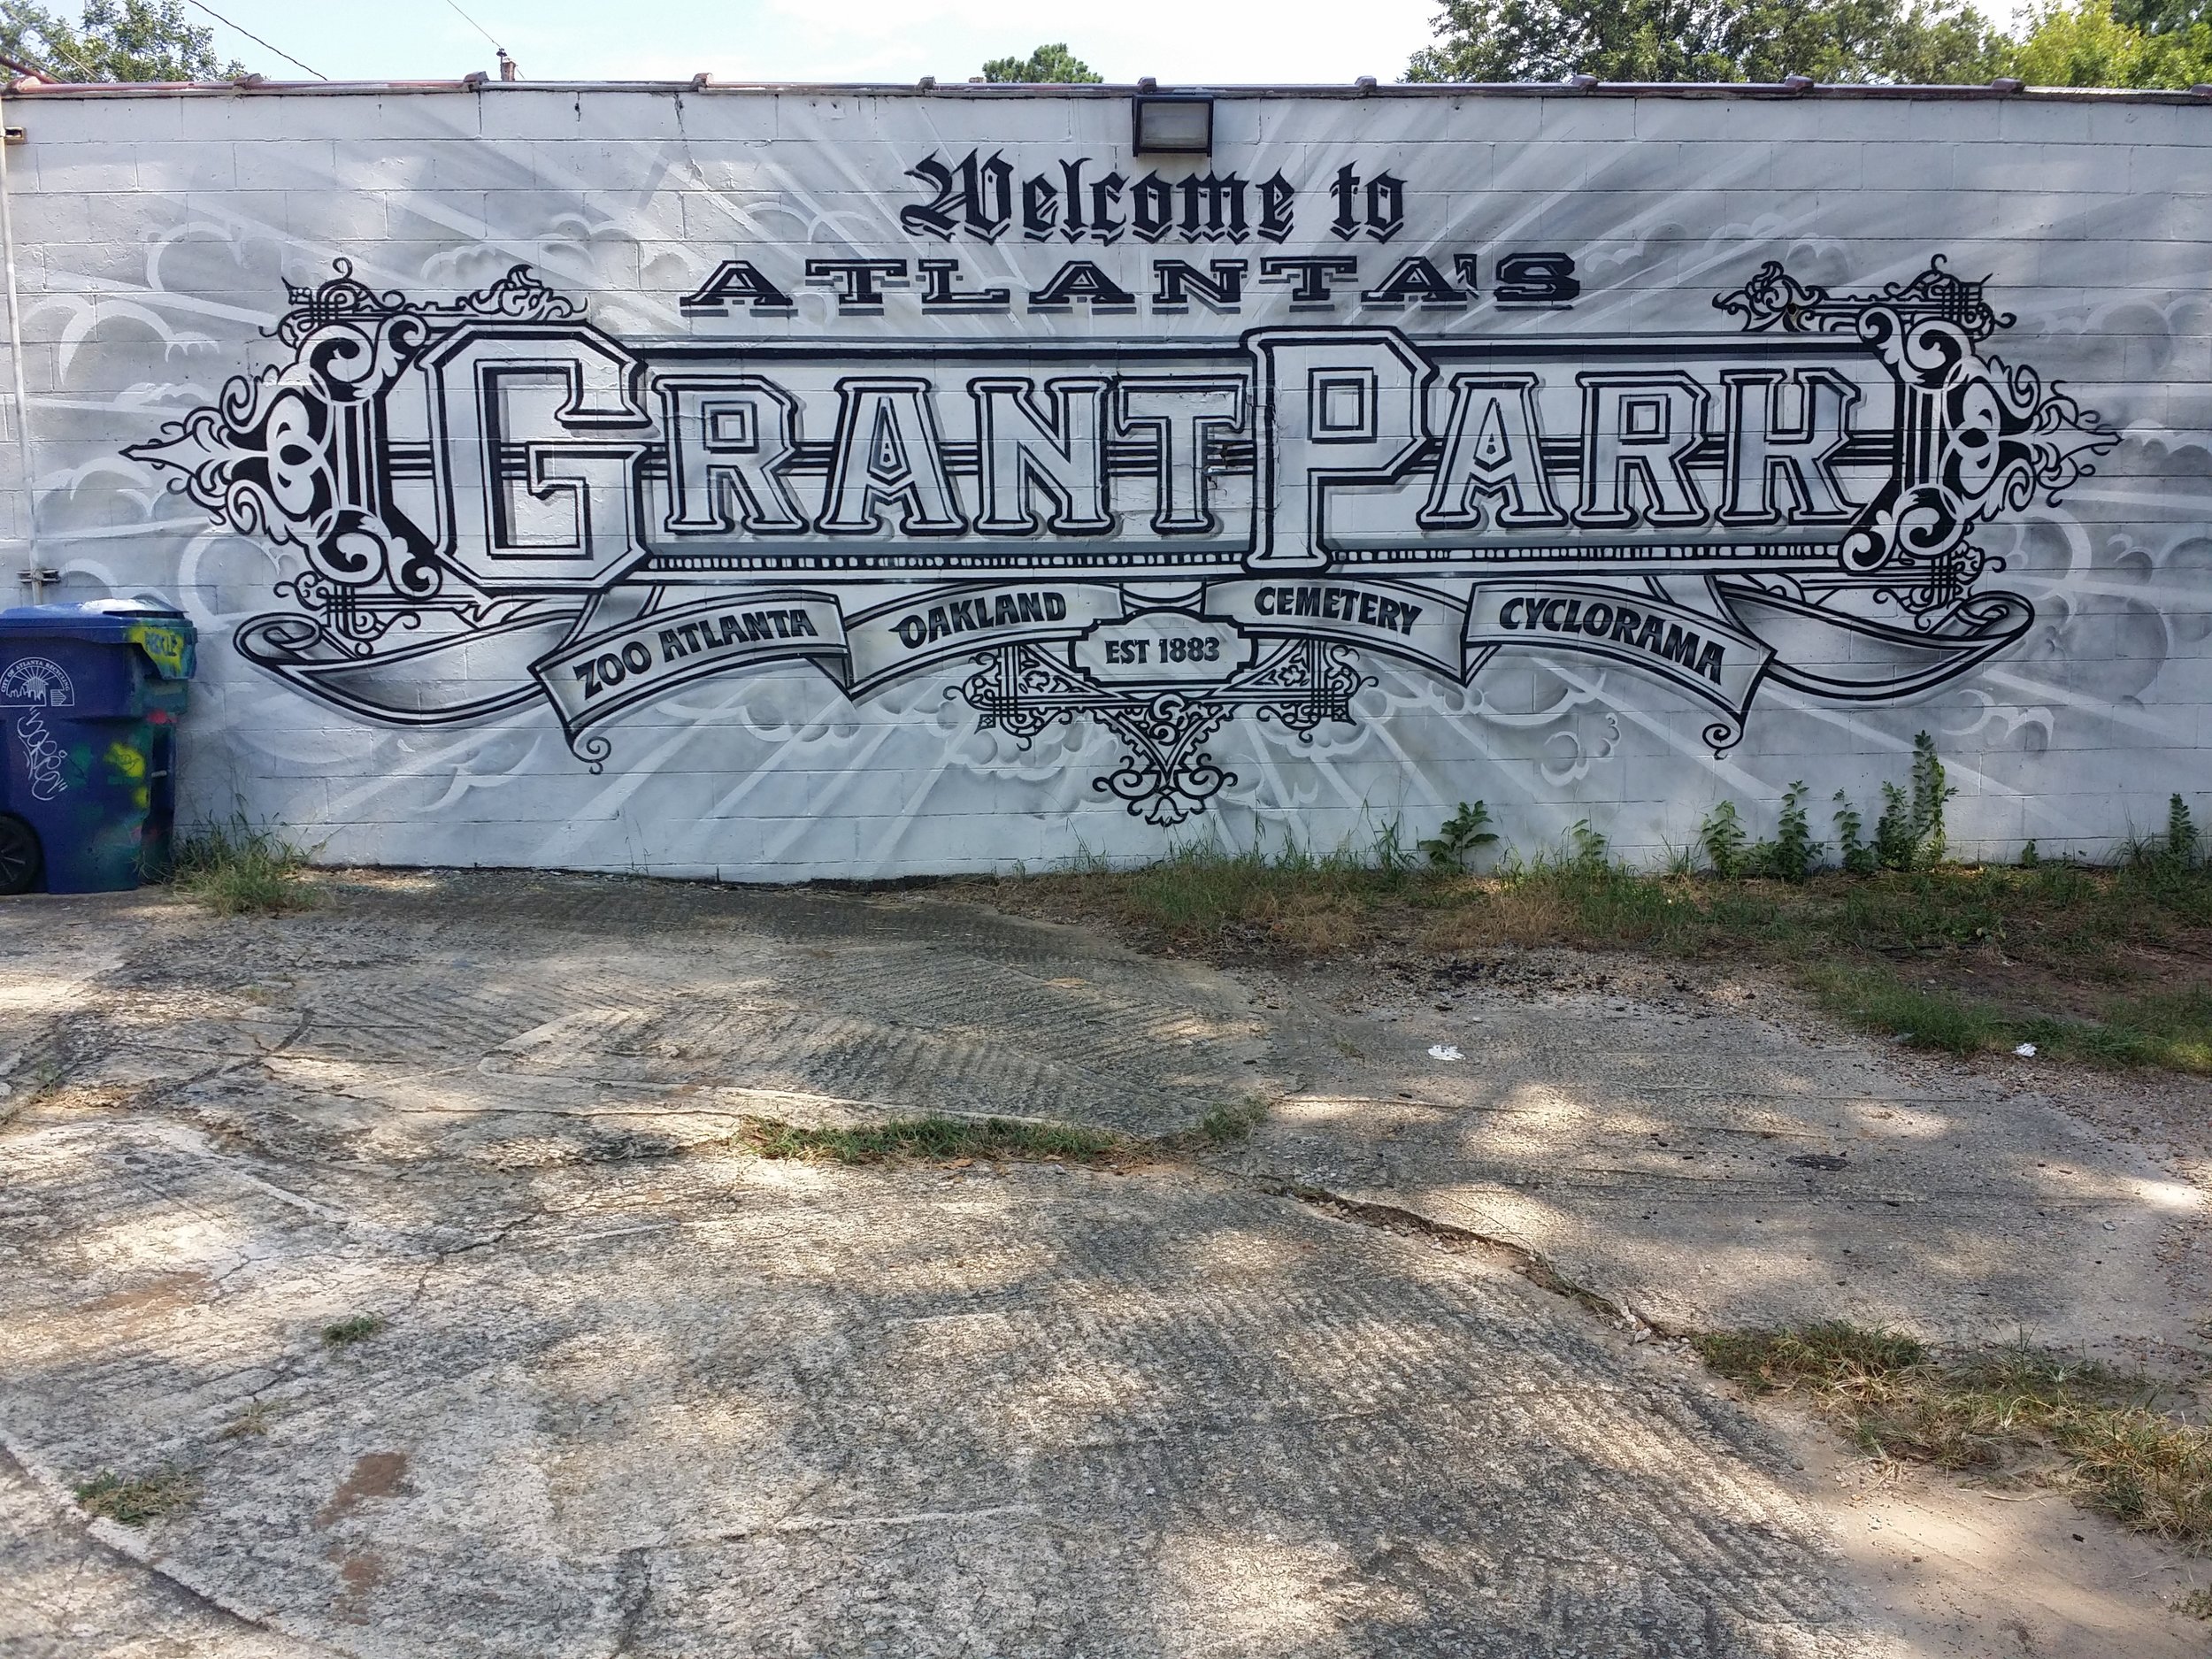 Grant Park Graffiti.jpg